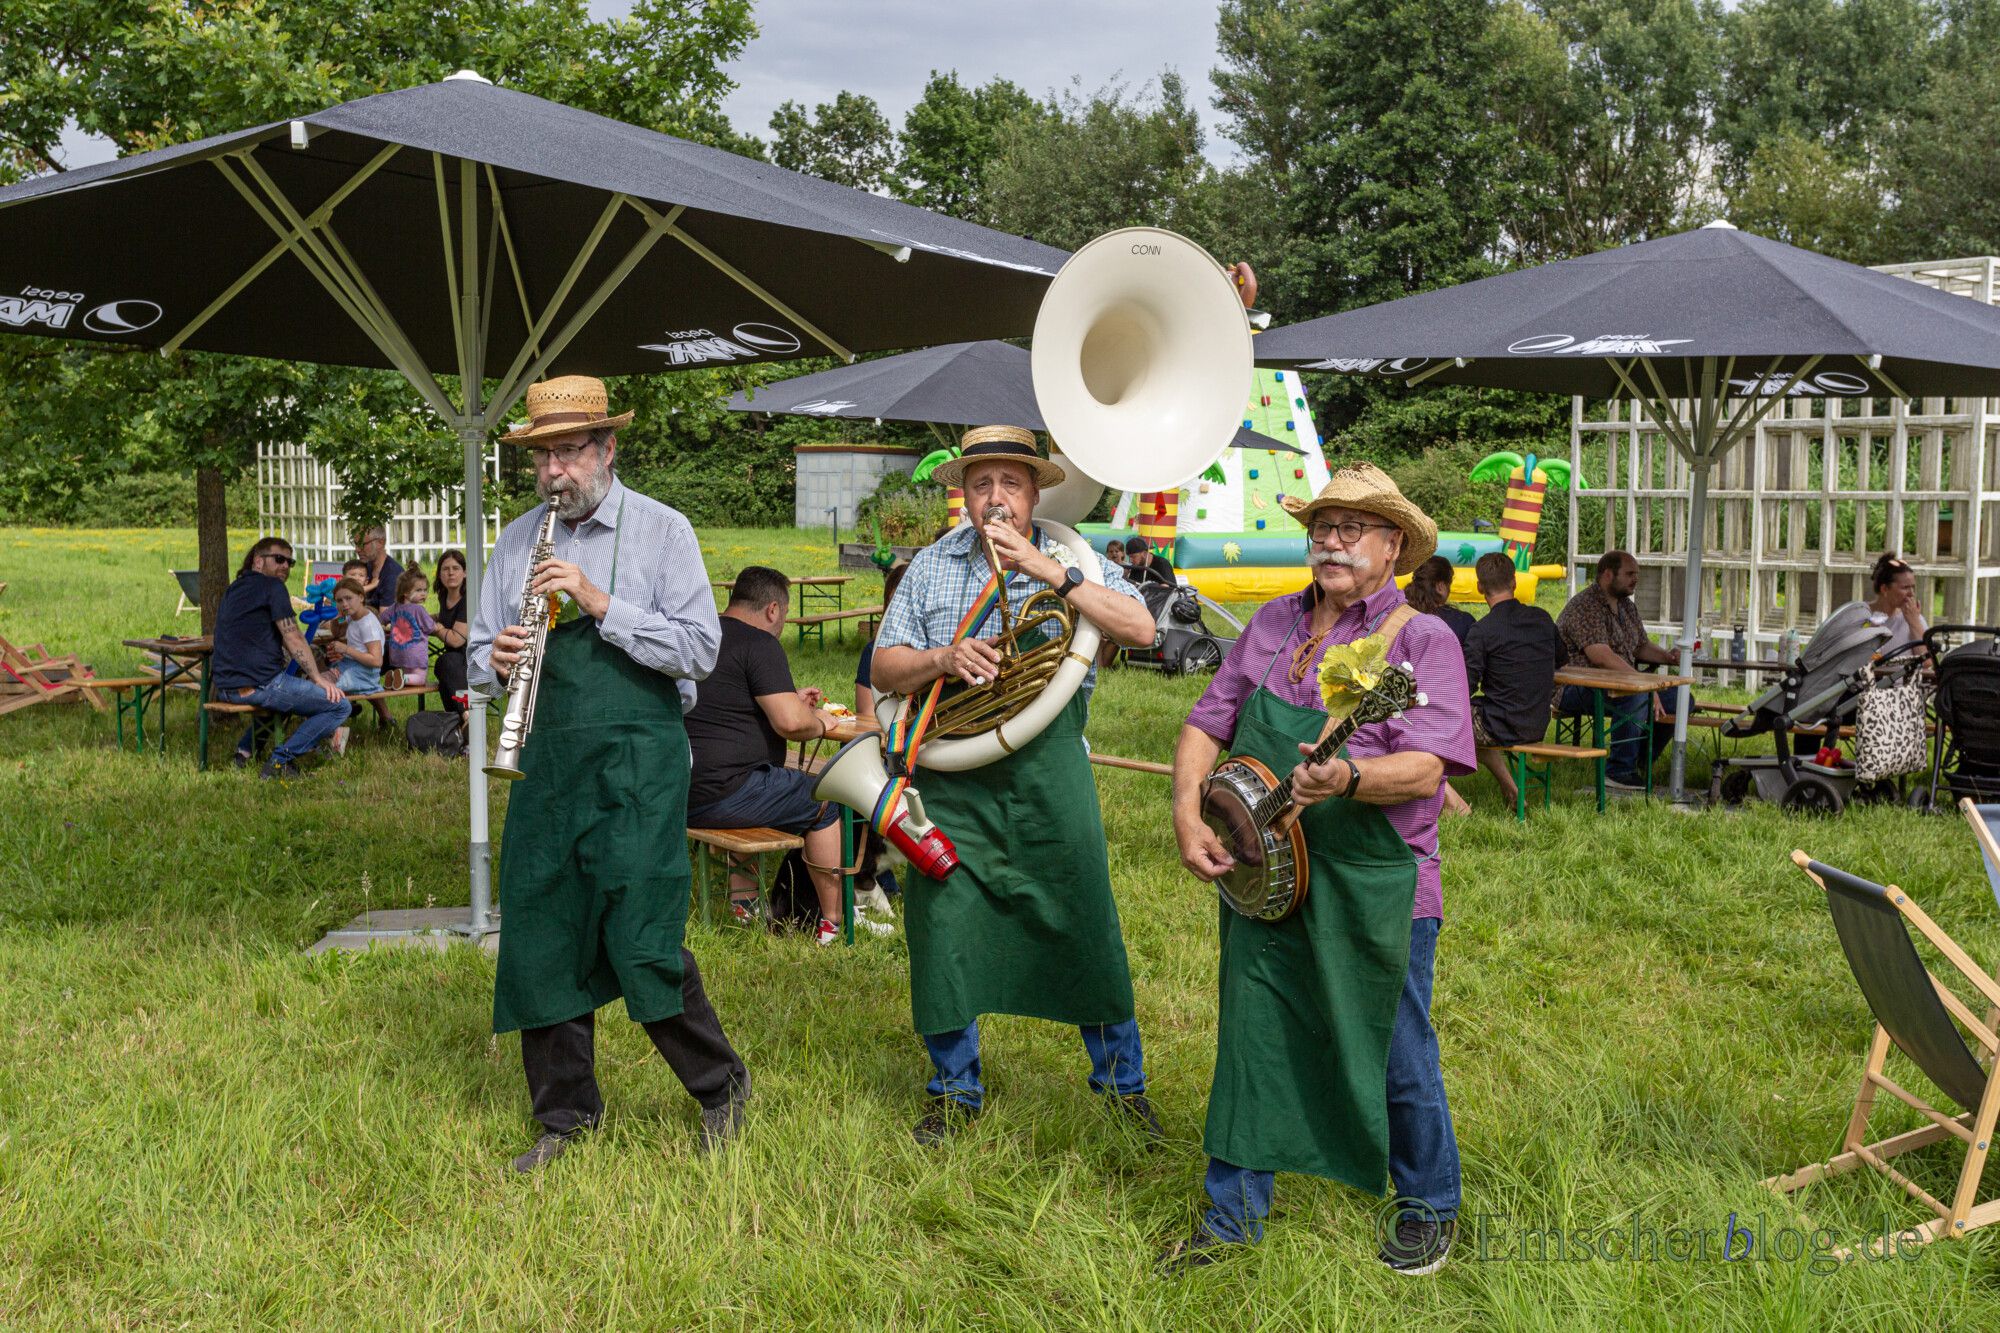 Die Walking Band "Singende Gärtner" ließen mit jazzigen Evergreens am Samstagnachmittag erst gar keine schlechte Stimmung aufkommen. (Foto: P. Gräber - Emscherblog)